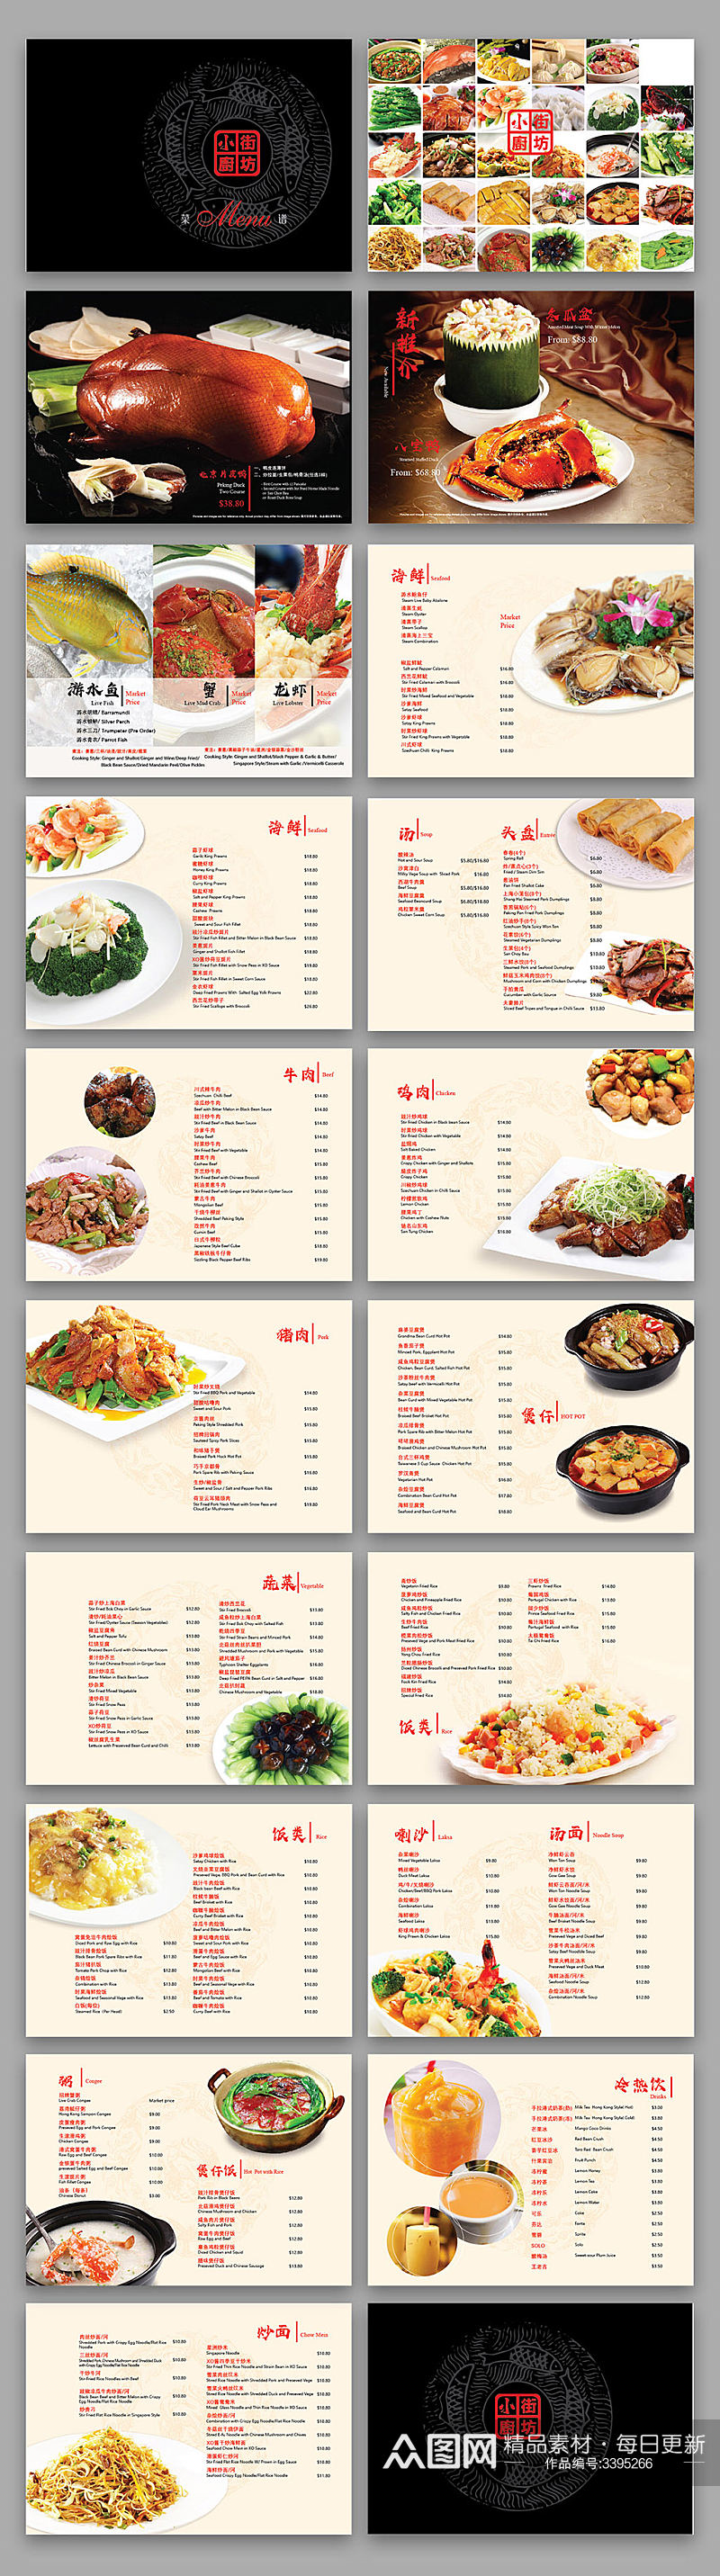 美食餐饮菜单画册素材